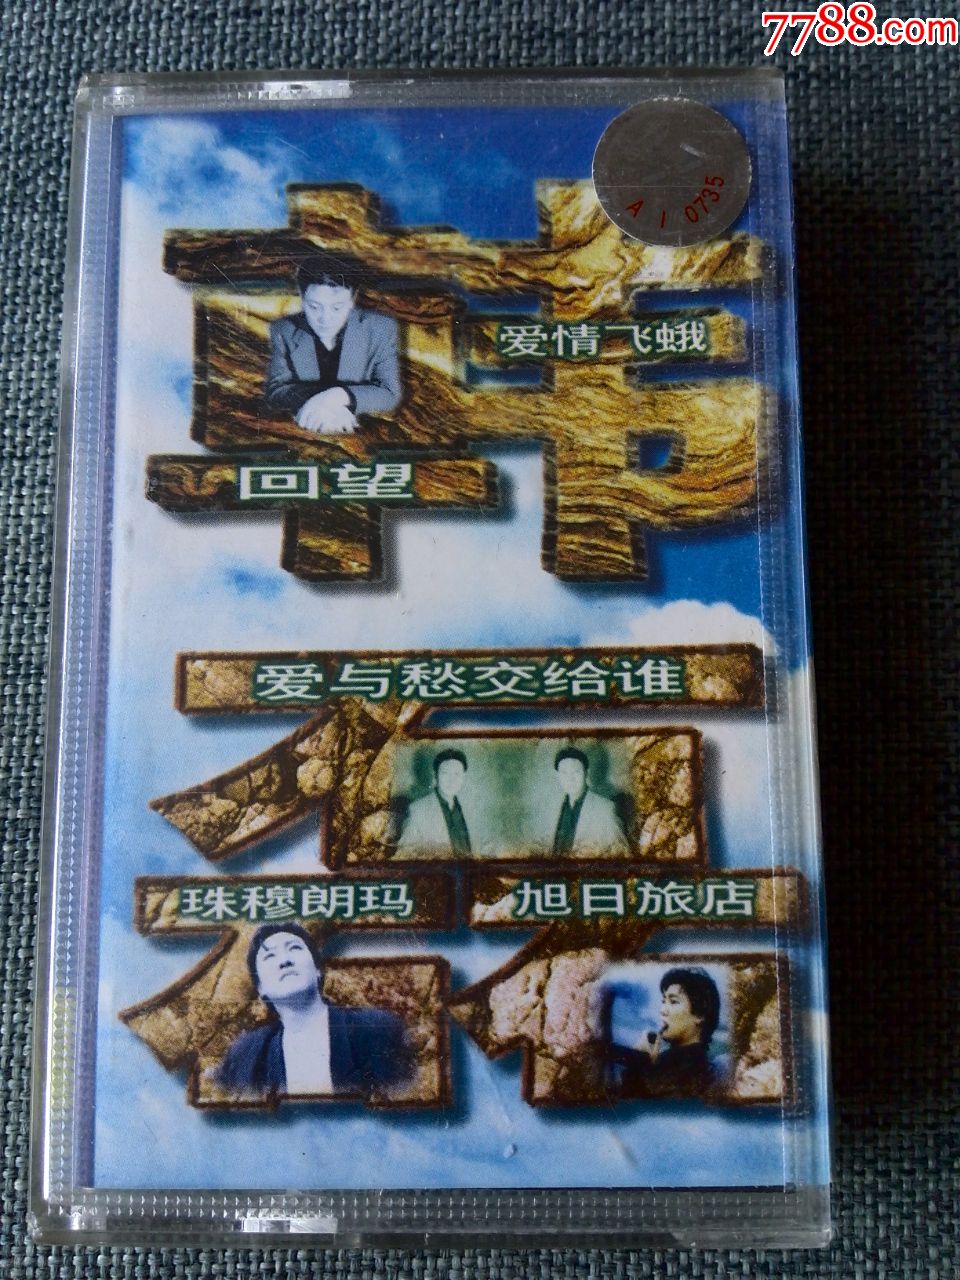 韩磊磁带图片